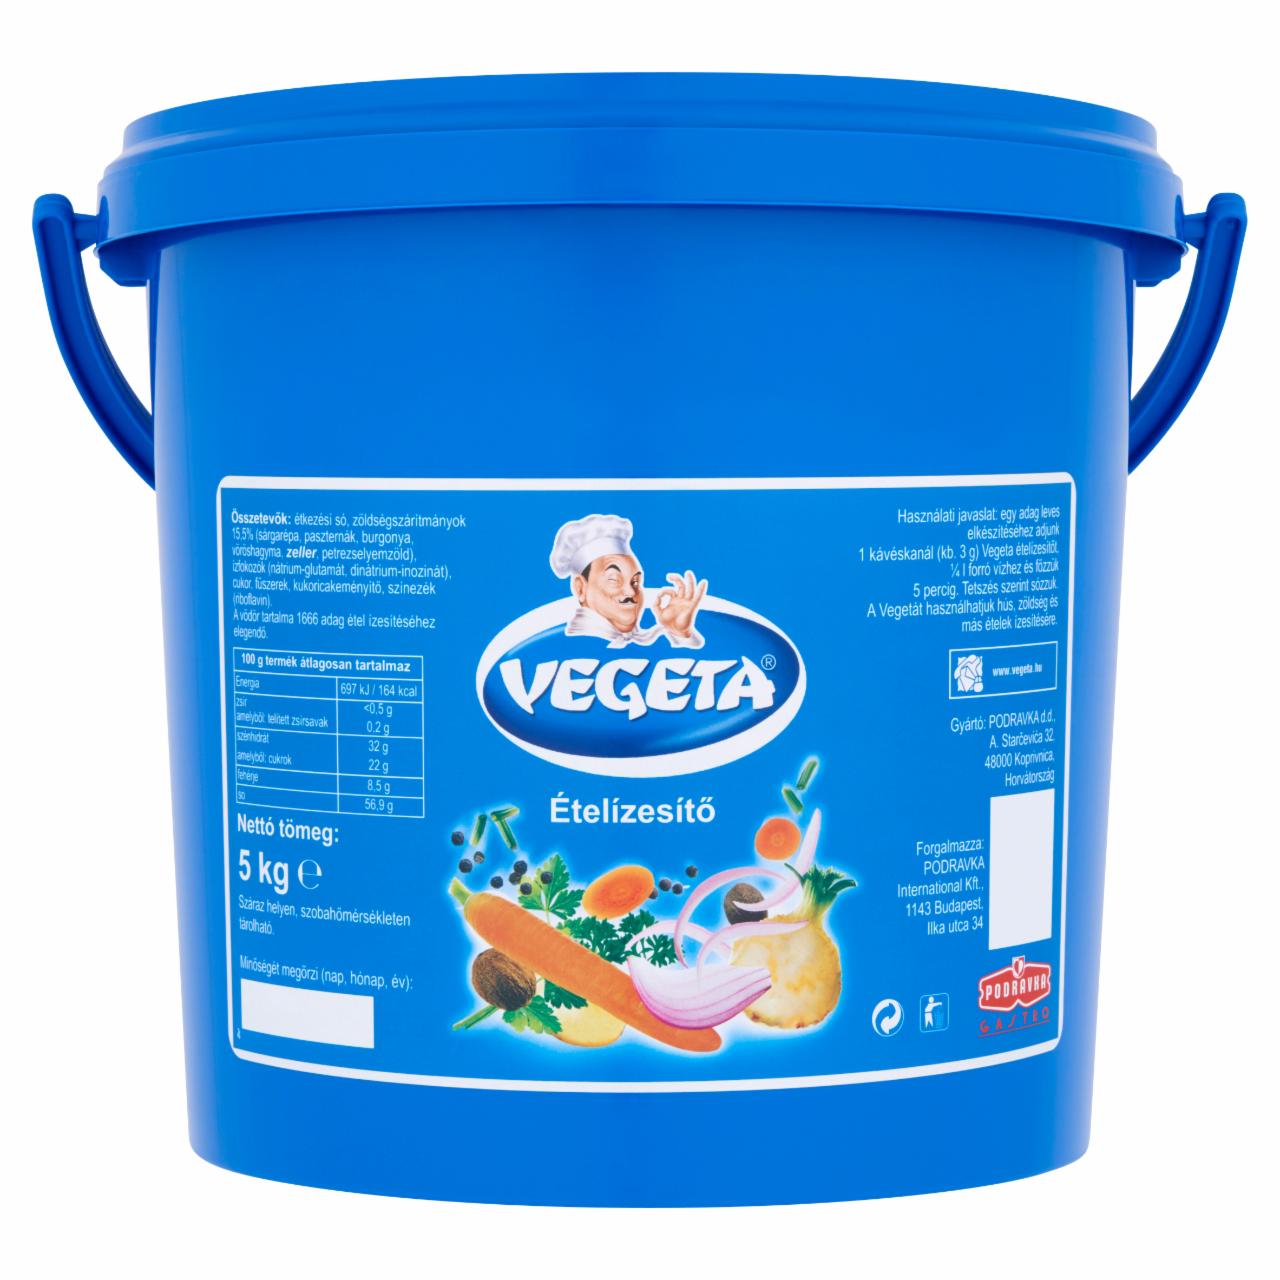 Képek - Vegeta ételízesítő 5 kg